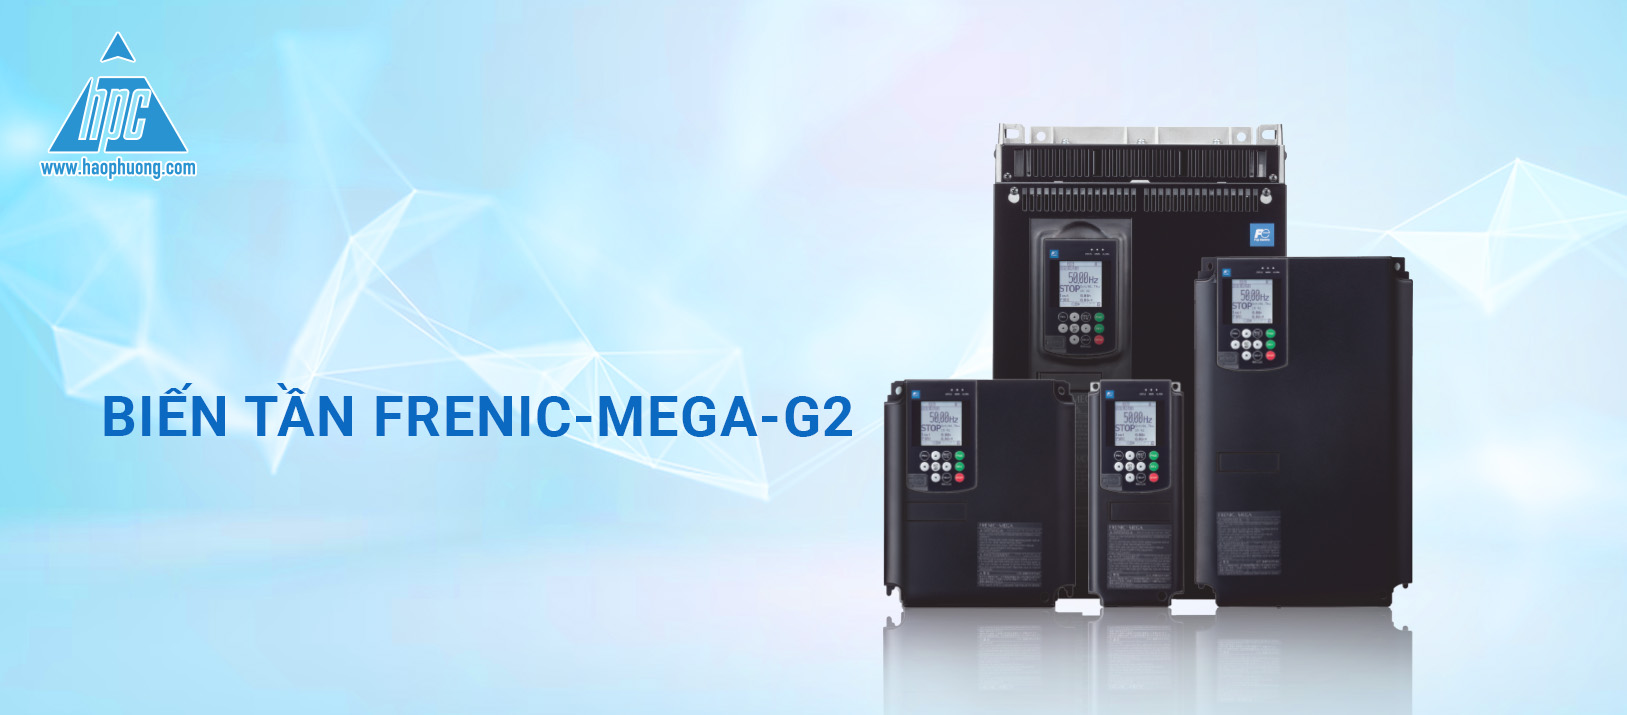 Các tính năng mới của Biến tần FRENIC-MEGA-G2